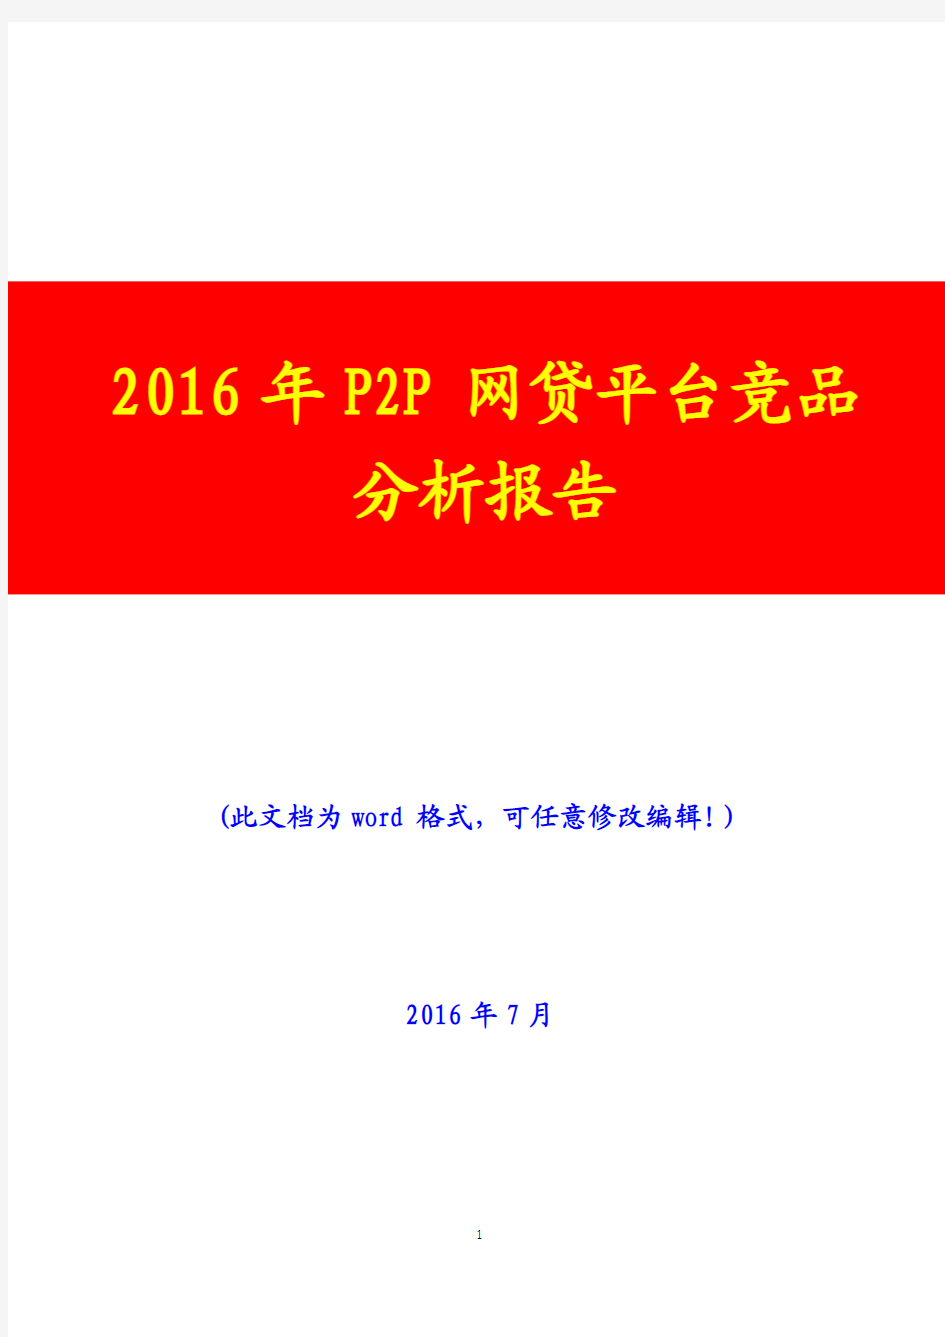 2016年P2P网贷平台竞品分析报告(完美版)